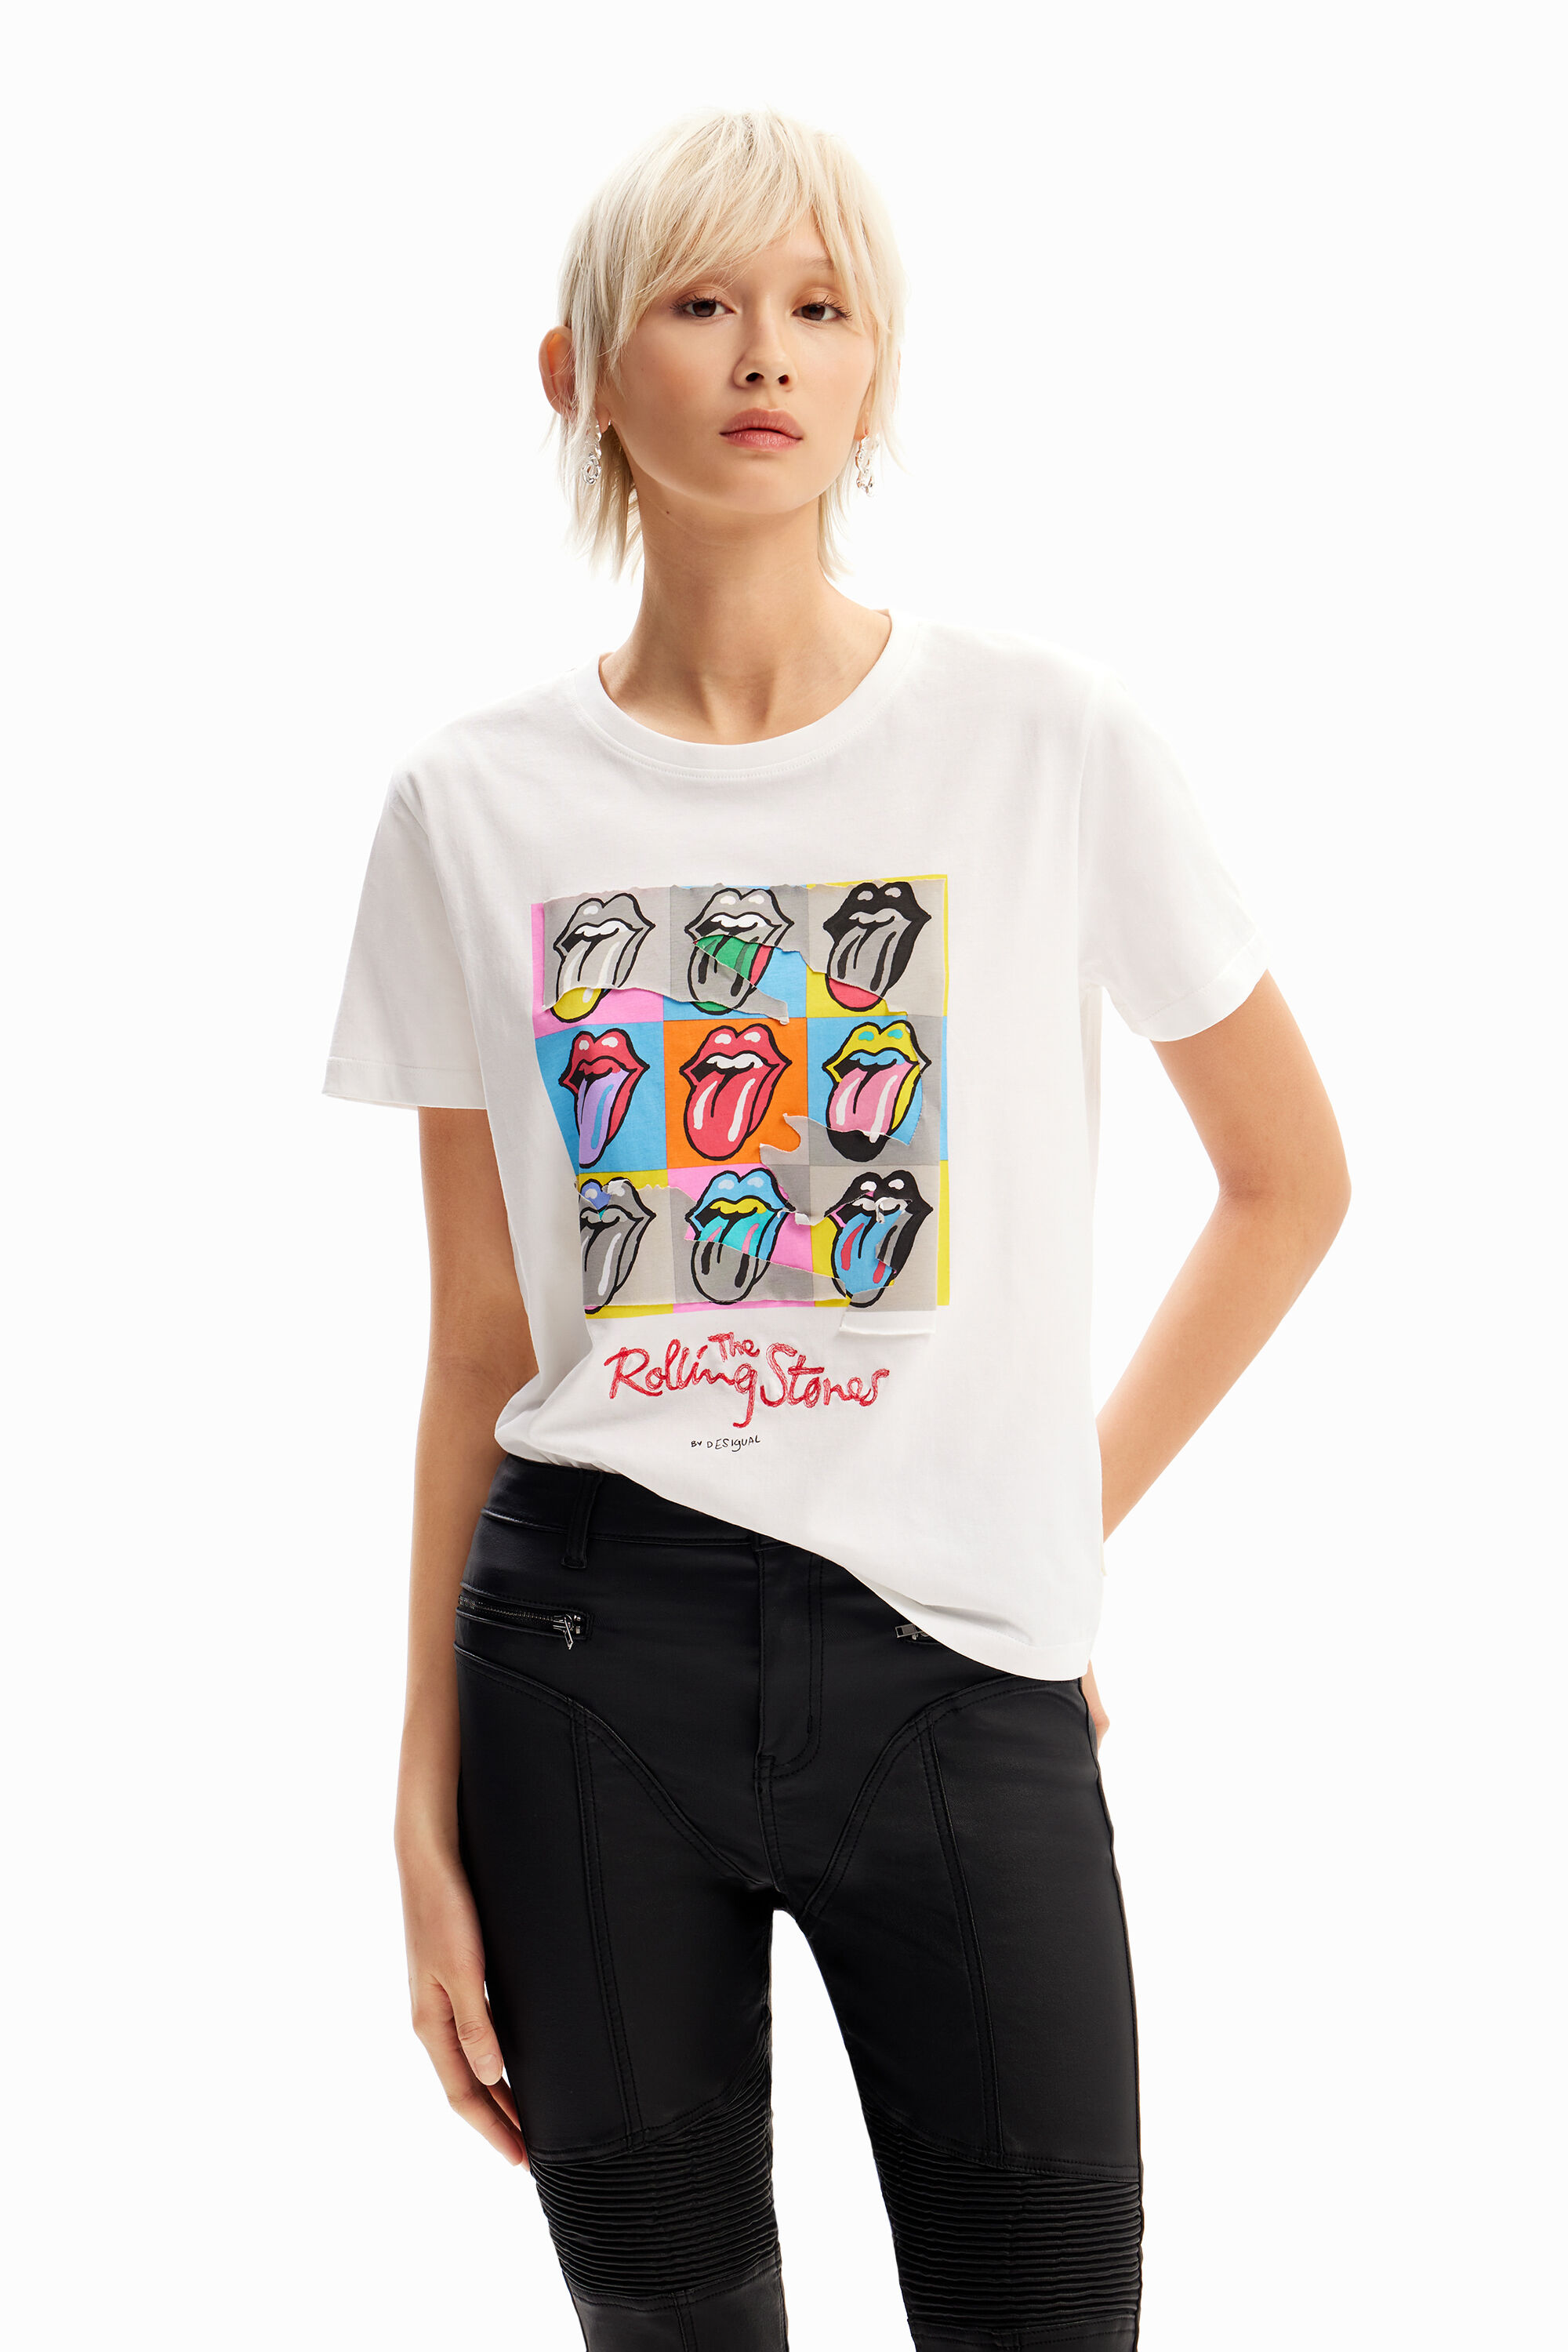 Desigual ROLLING STONES multicolour logo cotton T-shirt SS2024